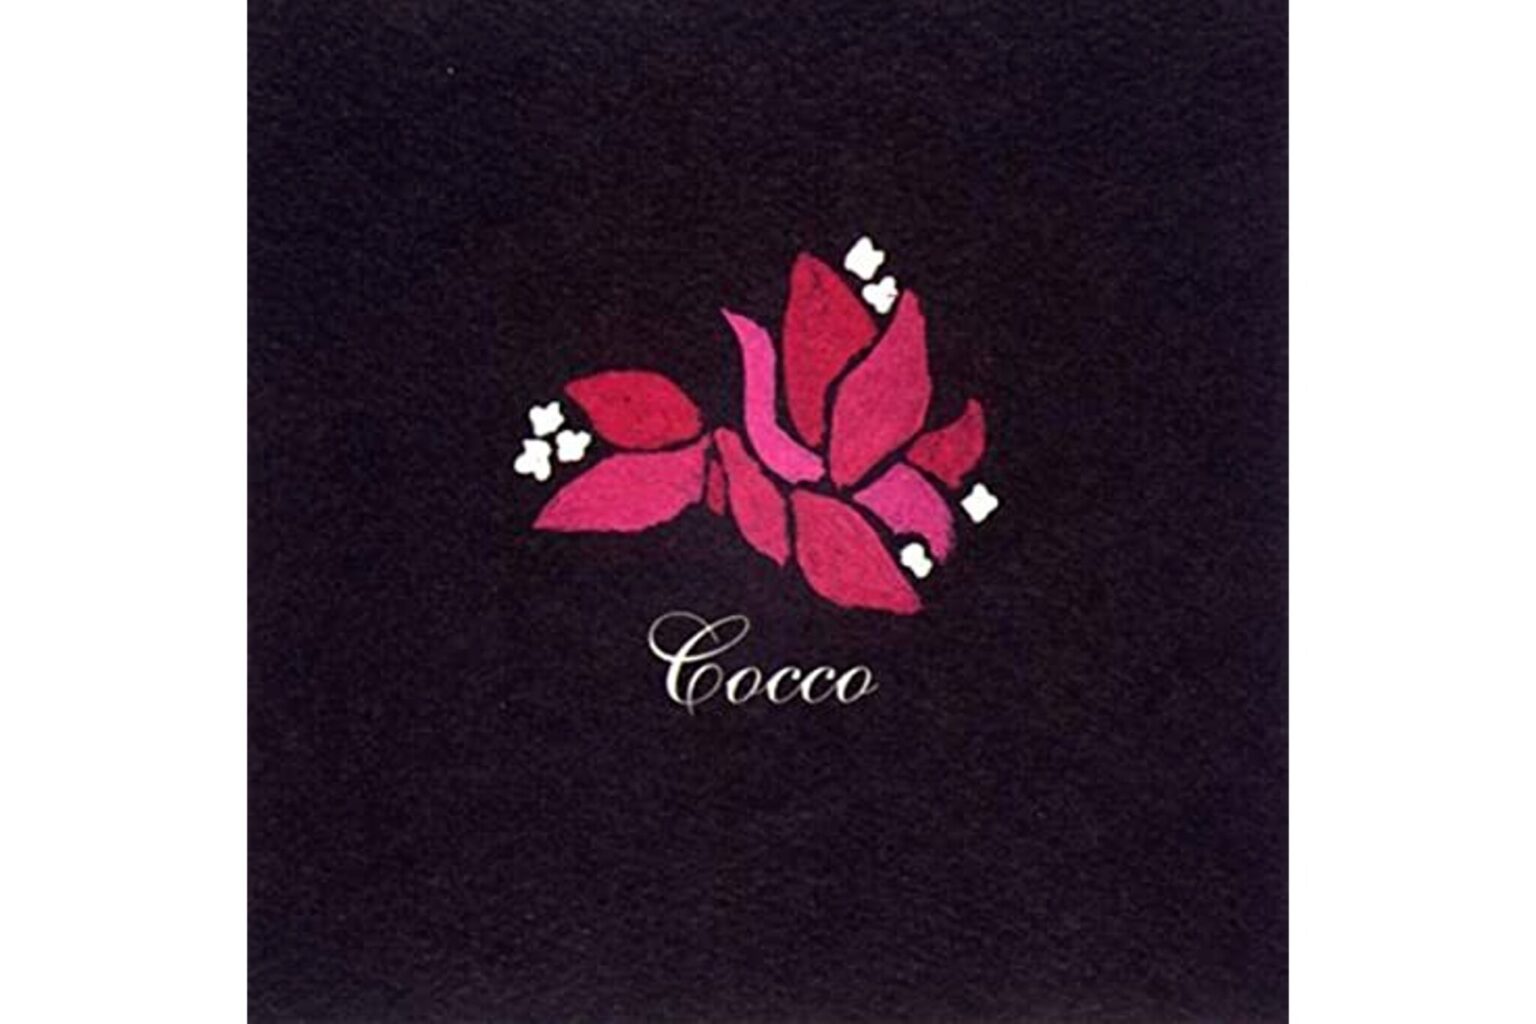 Cocco『ブーゲンビリア』／1997年発売のファーストアルバム。心の奥底をえぐり出すような内省的でインパクトの強い詞が美しいサウンドと歌に乗った名作。